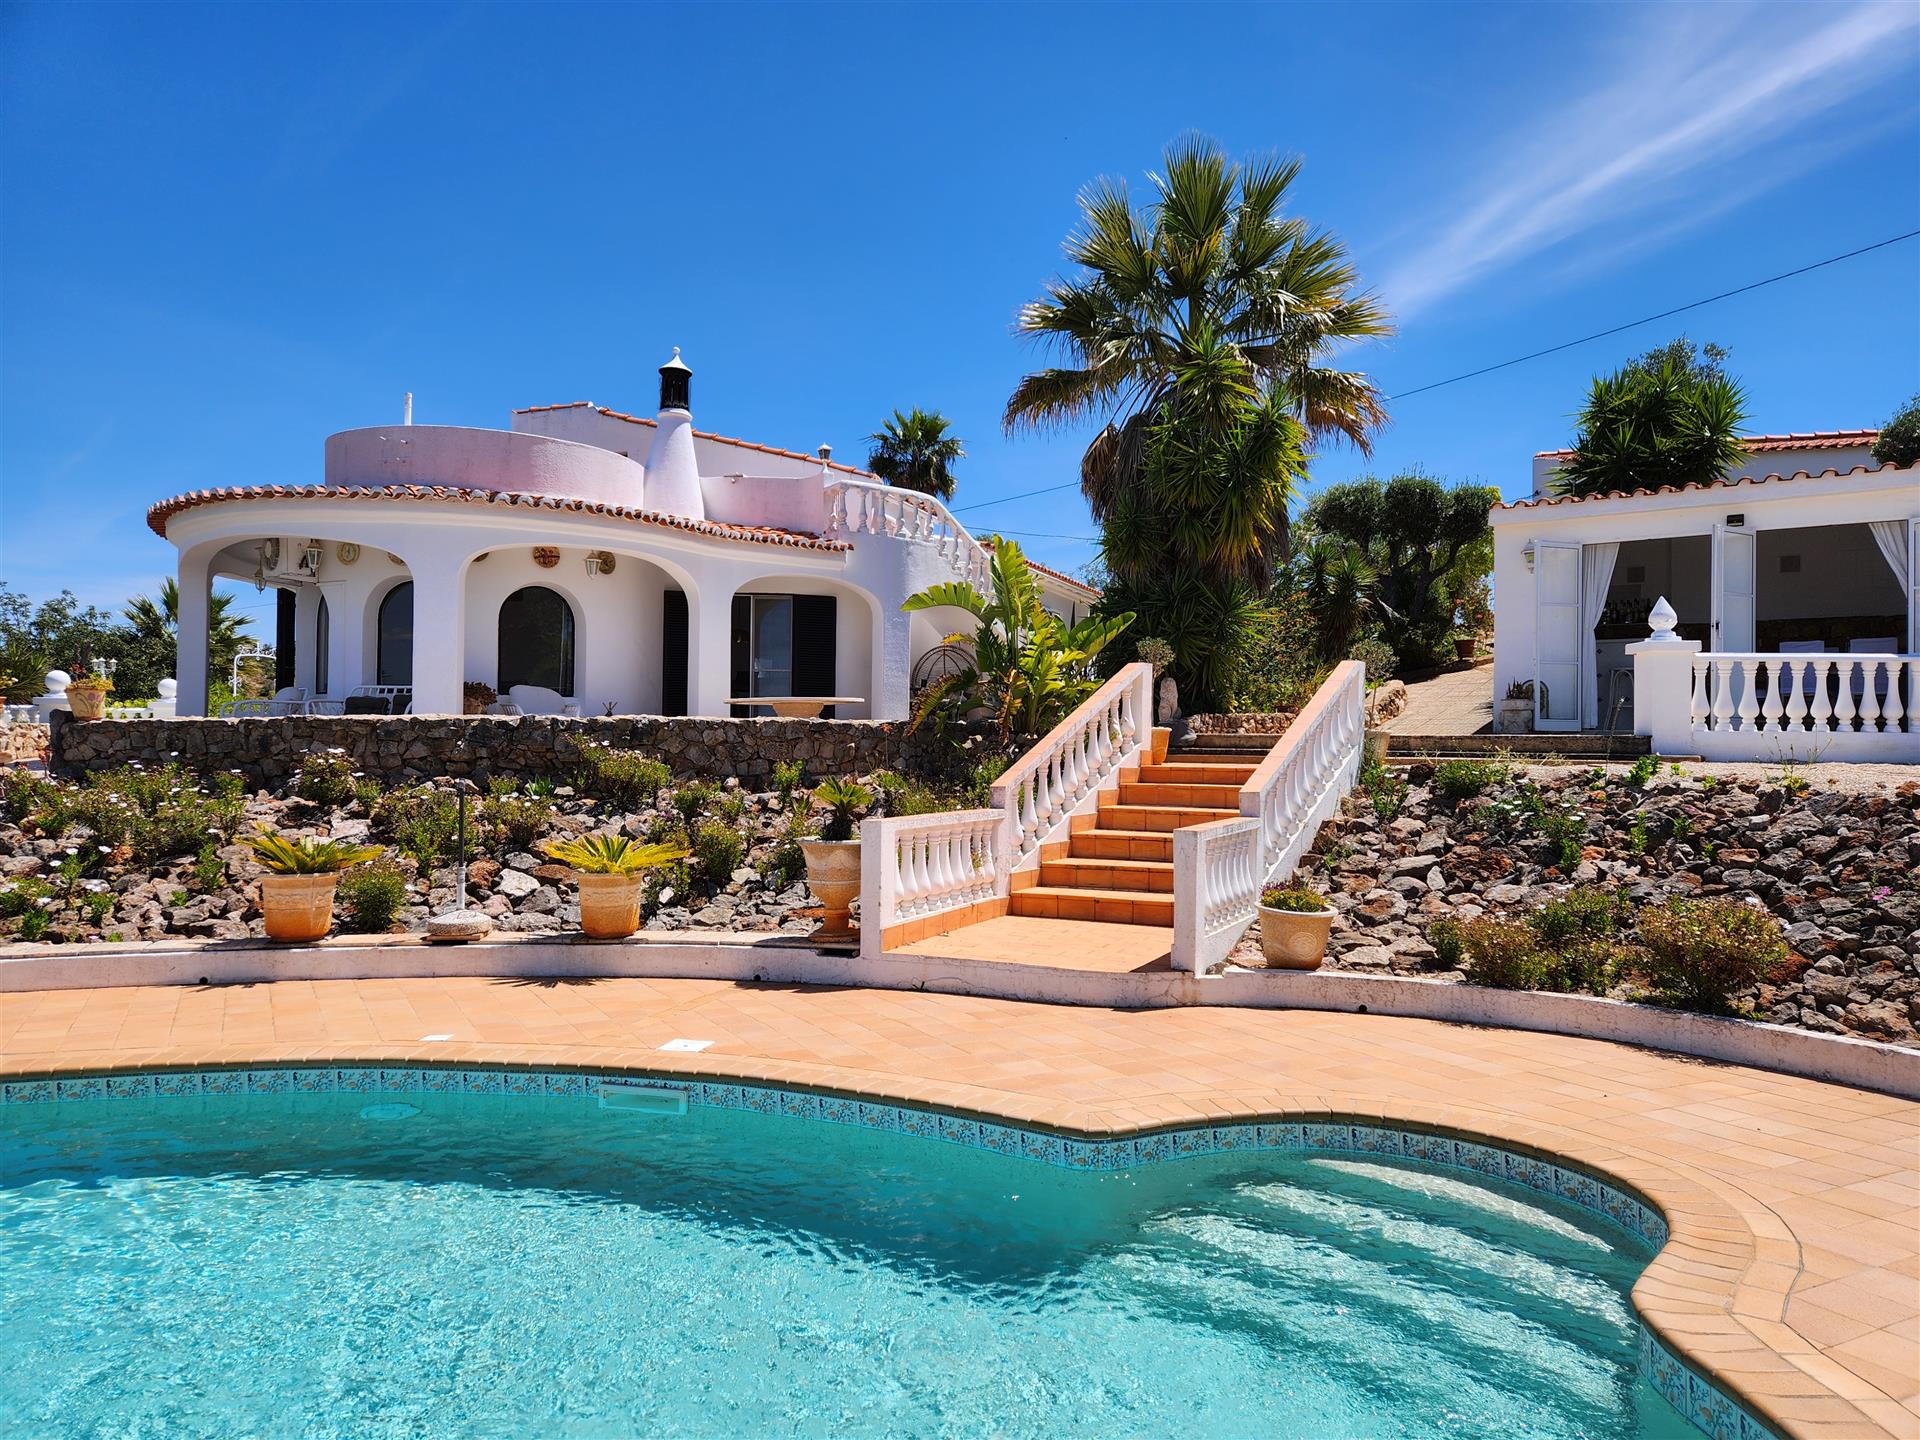 Idylliskt gömställe: Romantisk villa med förtrollande utsikt nära Silves, Portugal